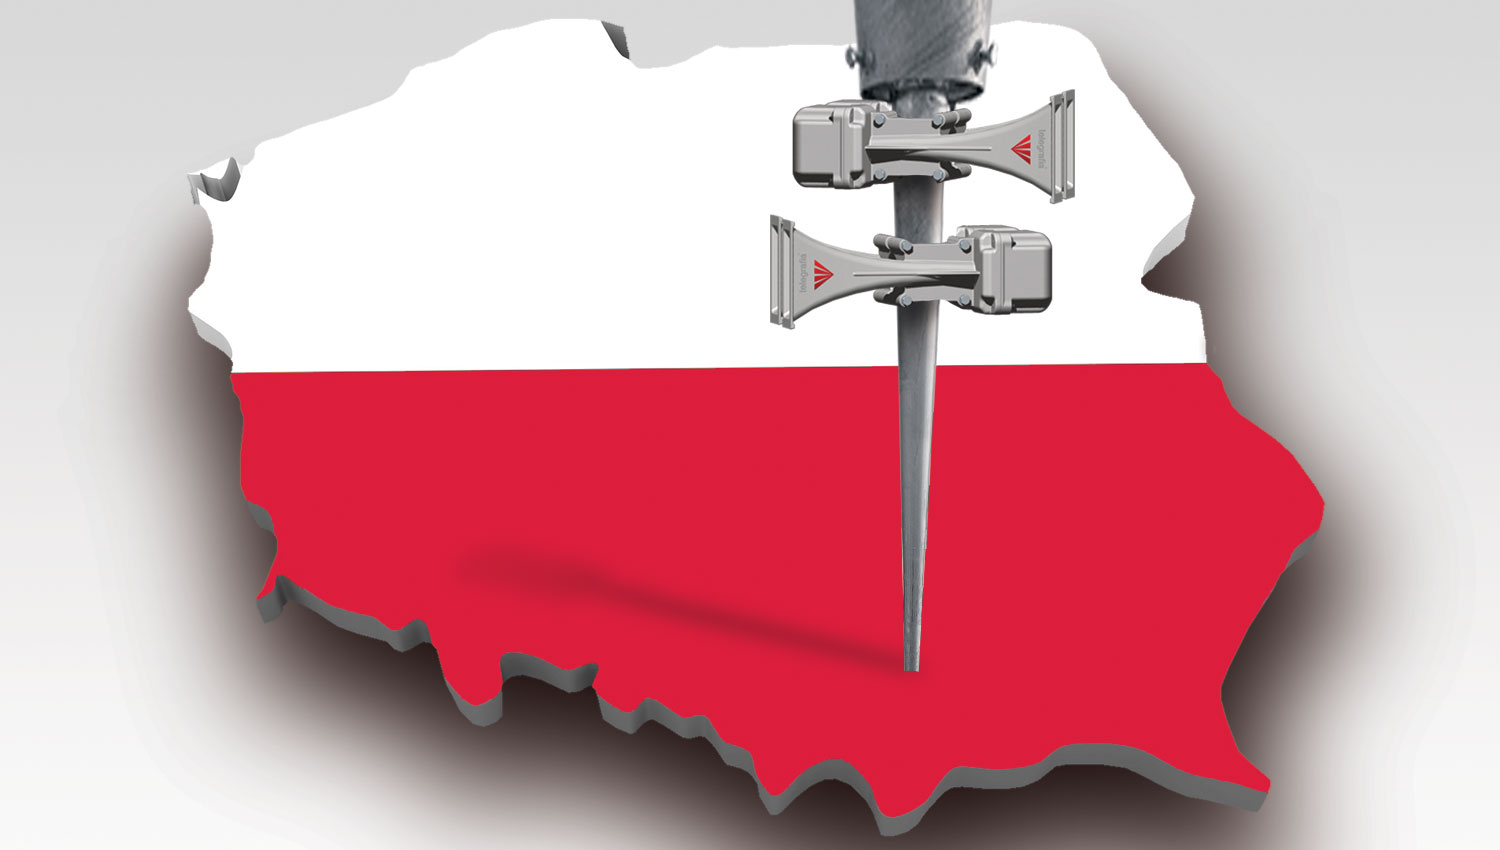 Histoire d’une belle réussite: la sirène électronique Mona a remplacé une sirène à moteur électrique obsolète en Pologne